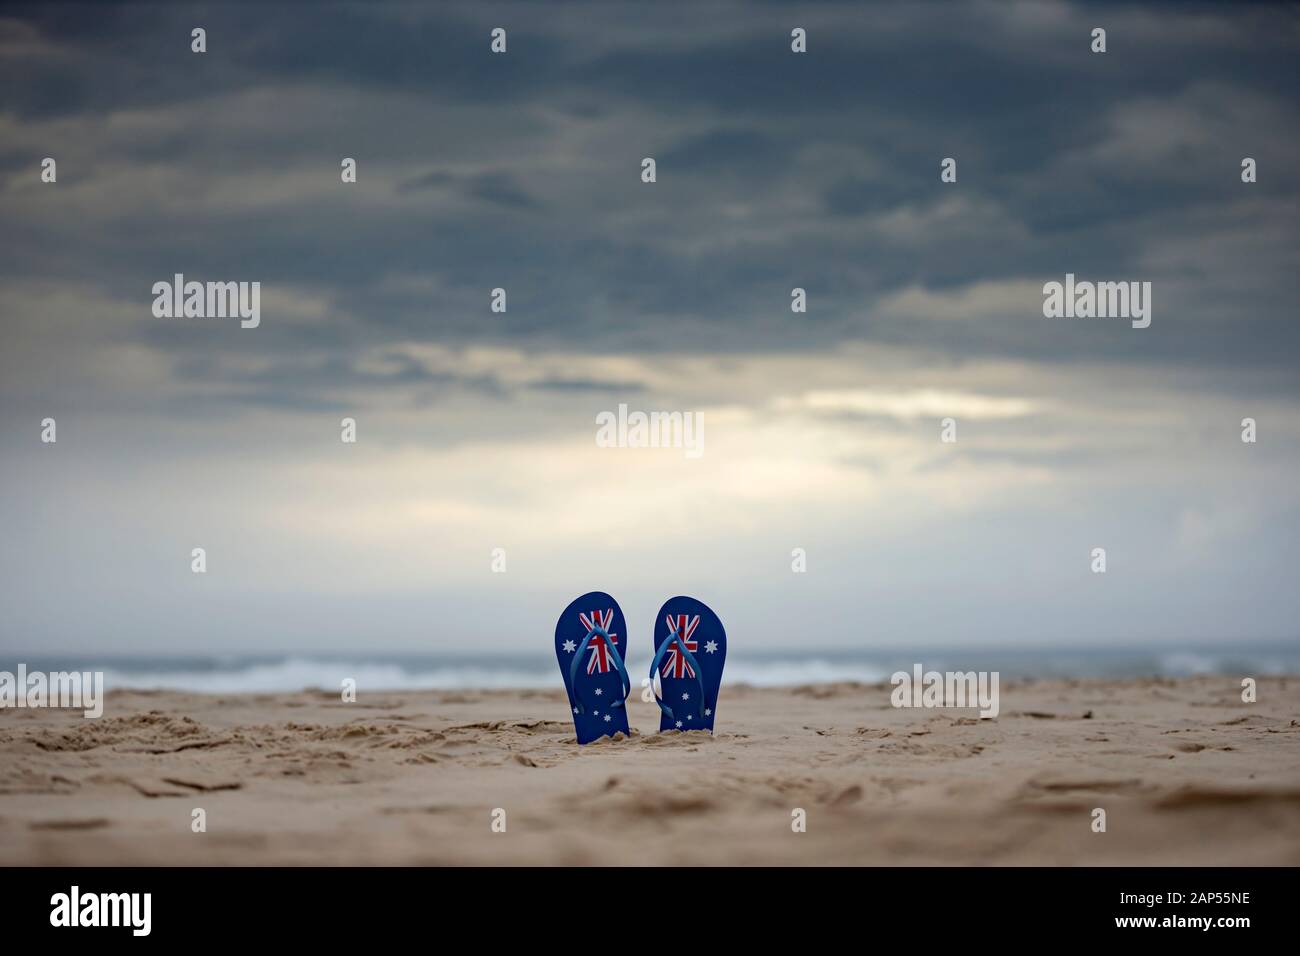 Australische Flaggenthongs, die aufrecht in Sand an einem australischen Strand mit dramatischem Hintergrund von Sturmwolken hängen. Tageskonzept Australien und warten oder beten Stockfoto